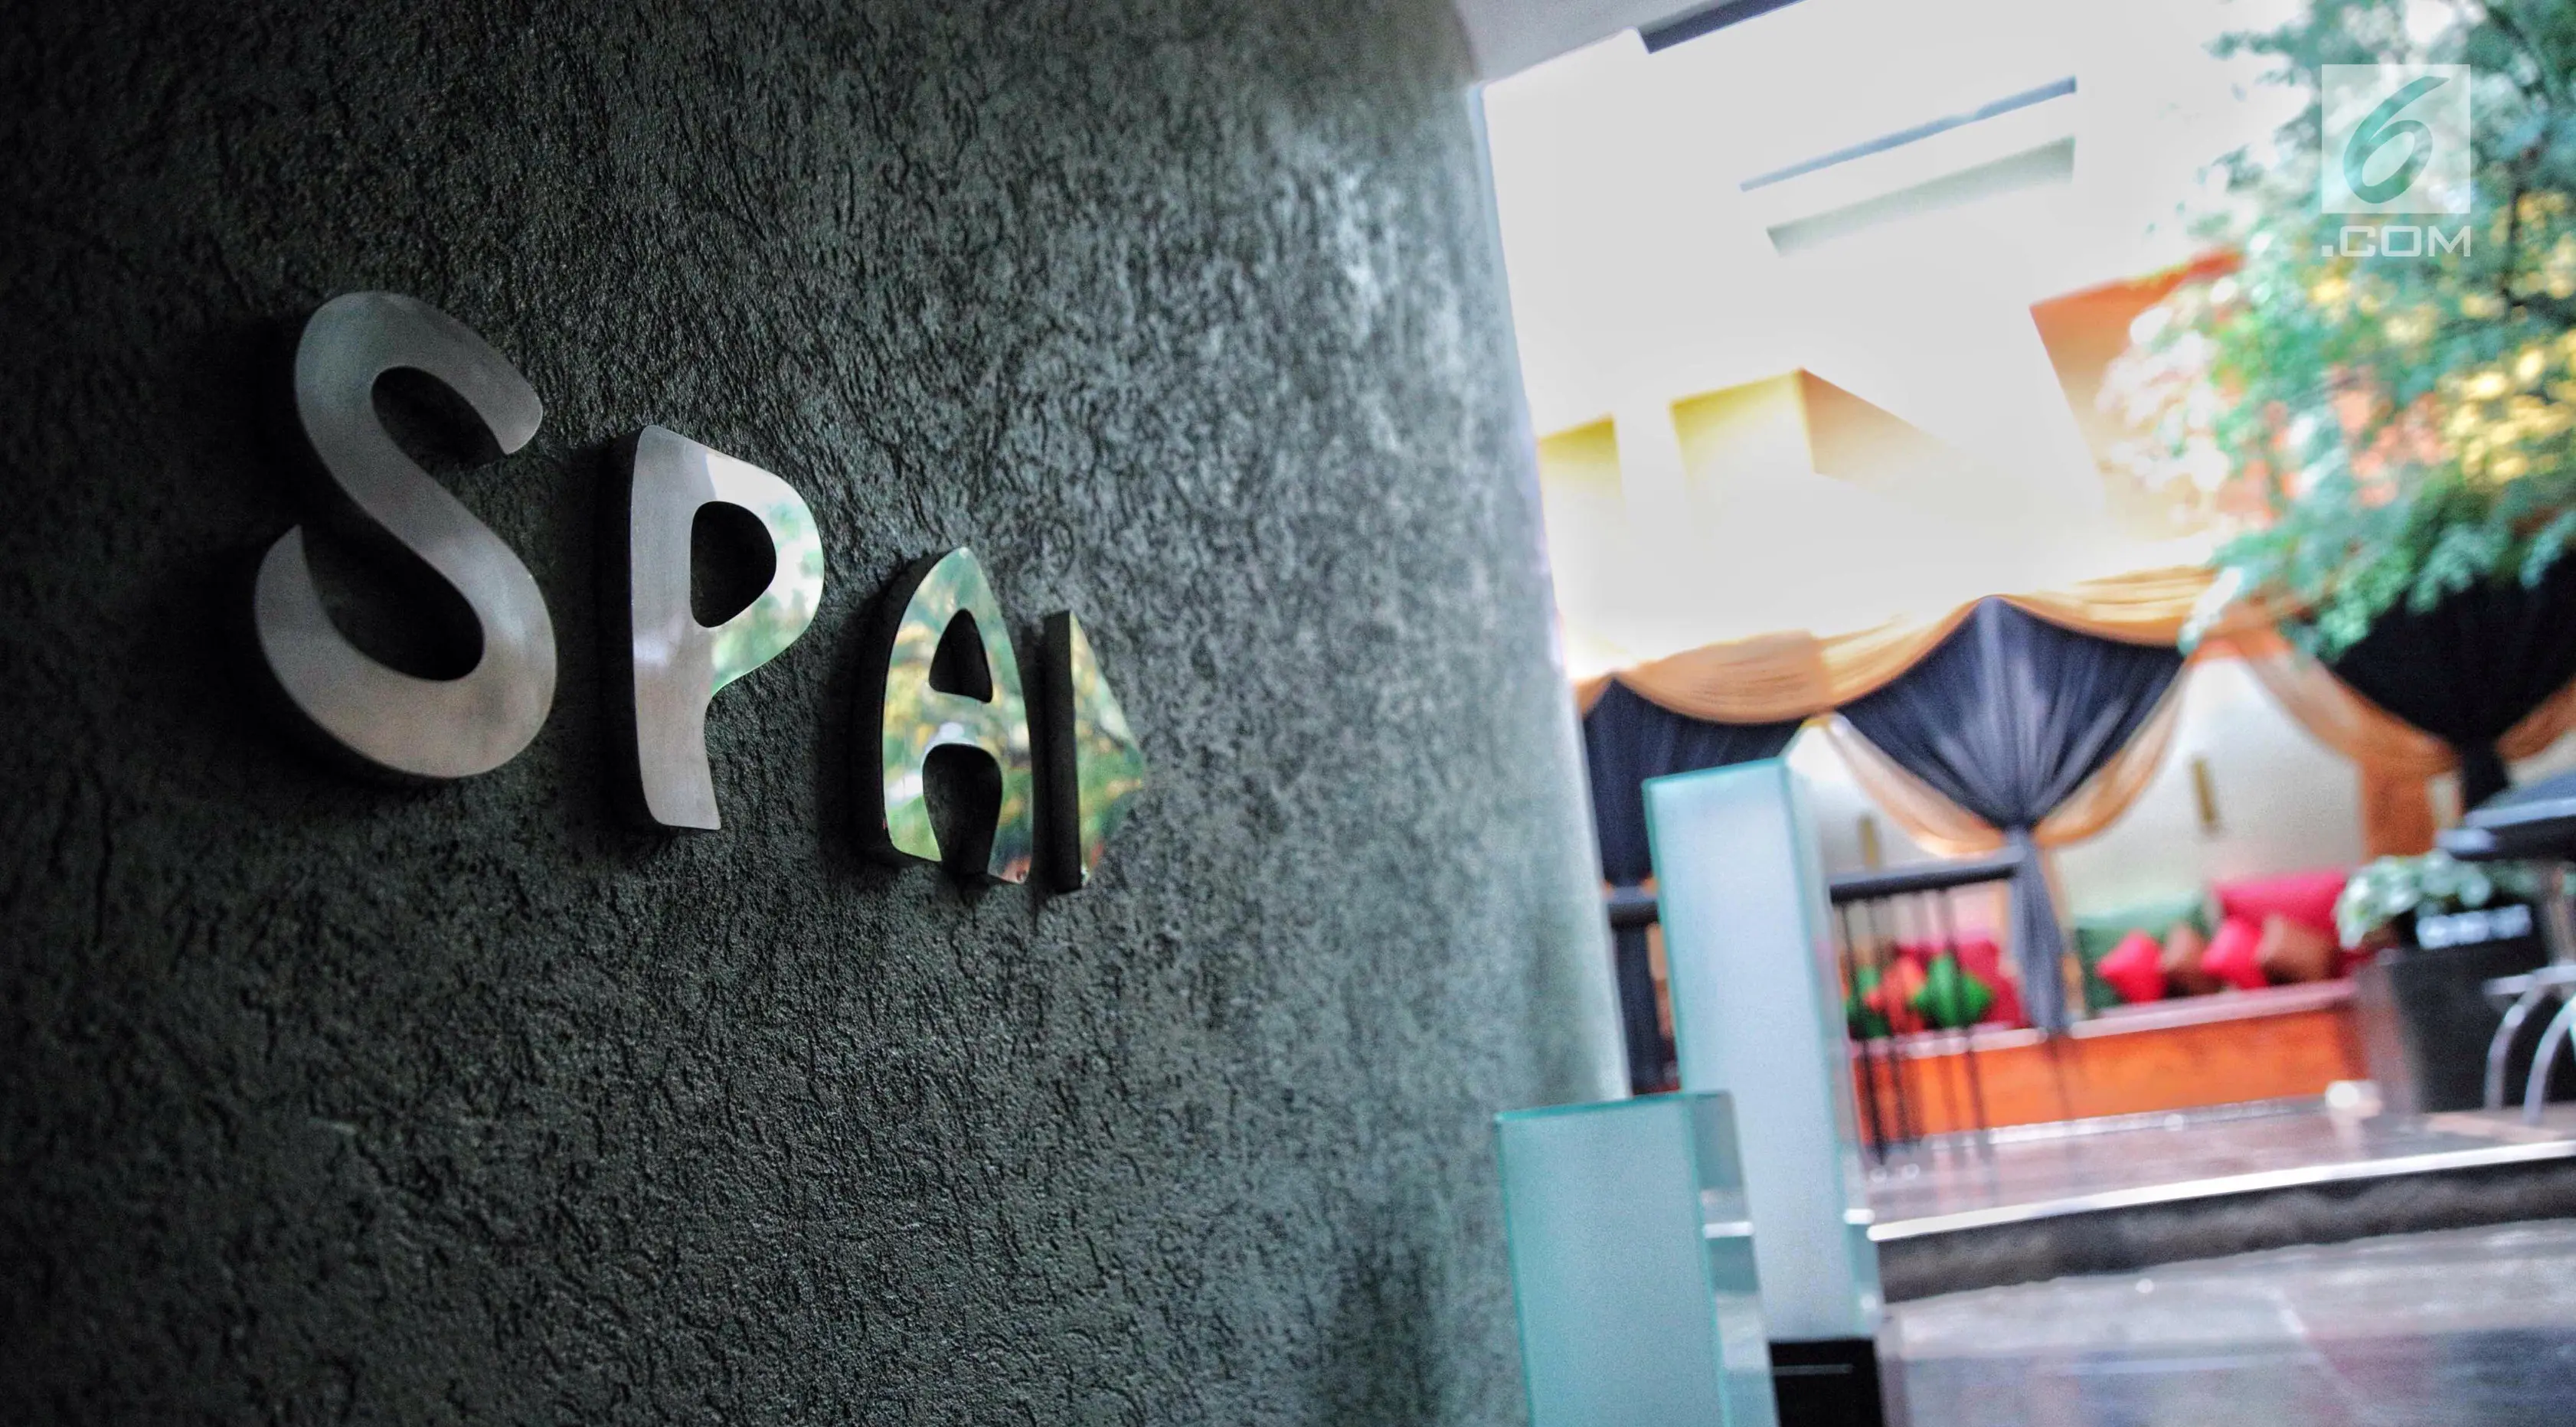 Petunjuk yang memperlihatkan arah menuju ruang SPA di lantai tujuh Hotel Alexis, Jakarta, Selasa (31/10). Untuk menuju tempat pijat dan spa, harus menaiki sebuah tangga melingkar setengah lingkaran. (Liputan6.com/Faizal Fanani)